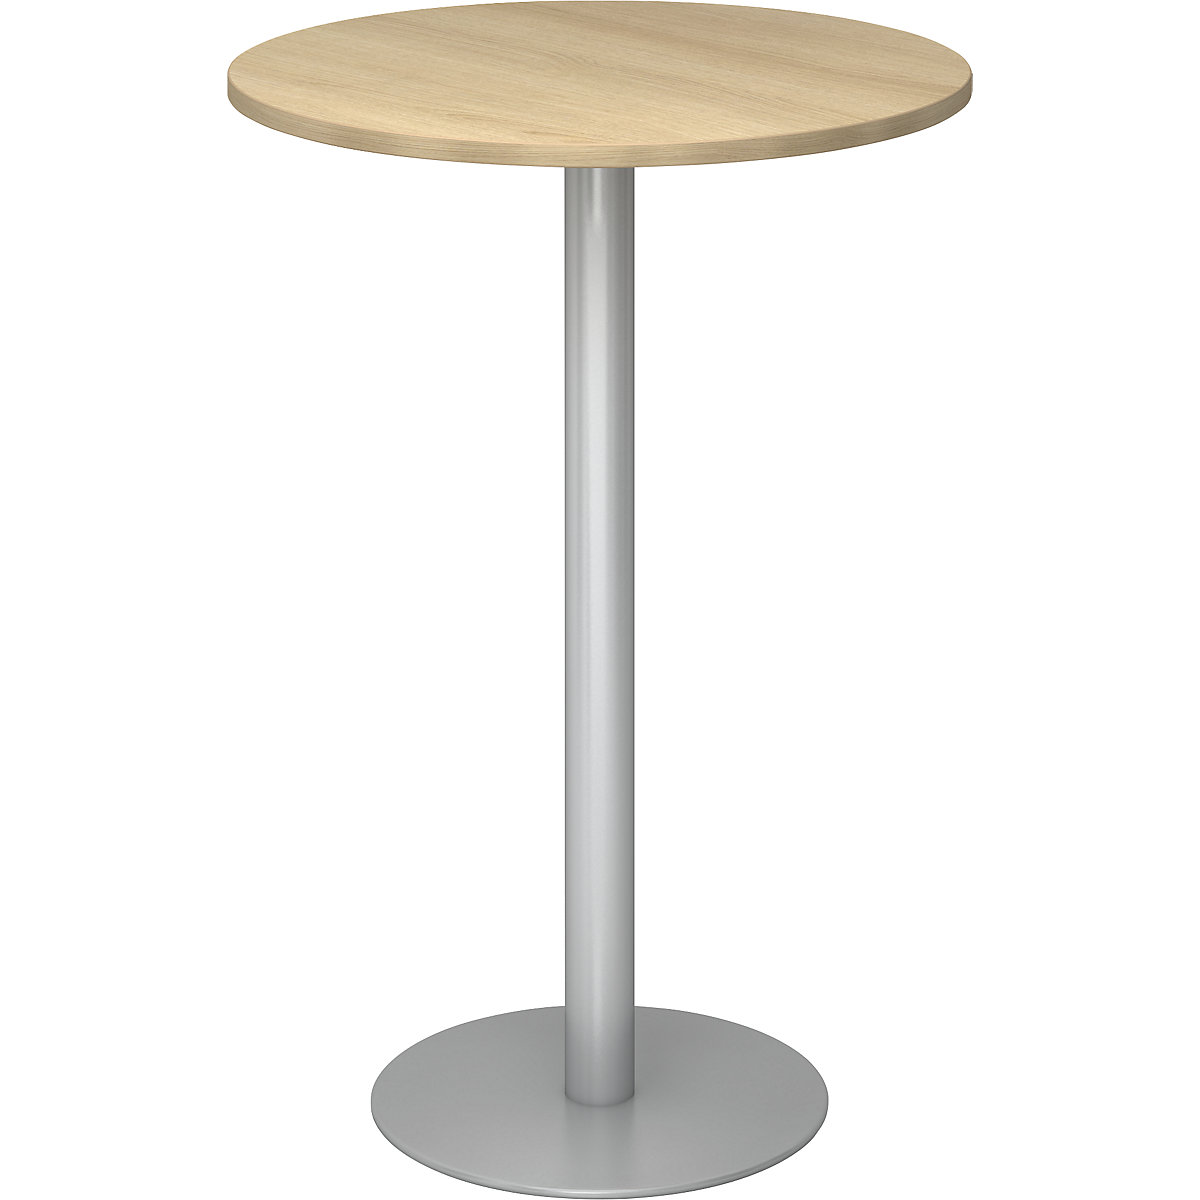 Állóasztal, Ø 800 mm, 1116 mm magas, ezüst váz, tölgyfa-dekor asztallap